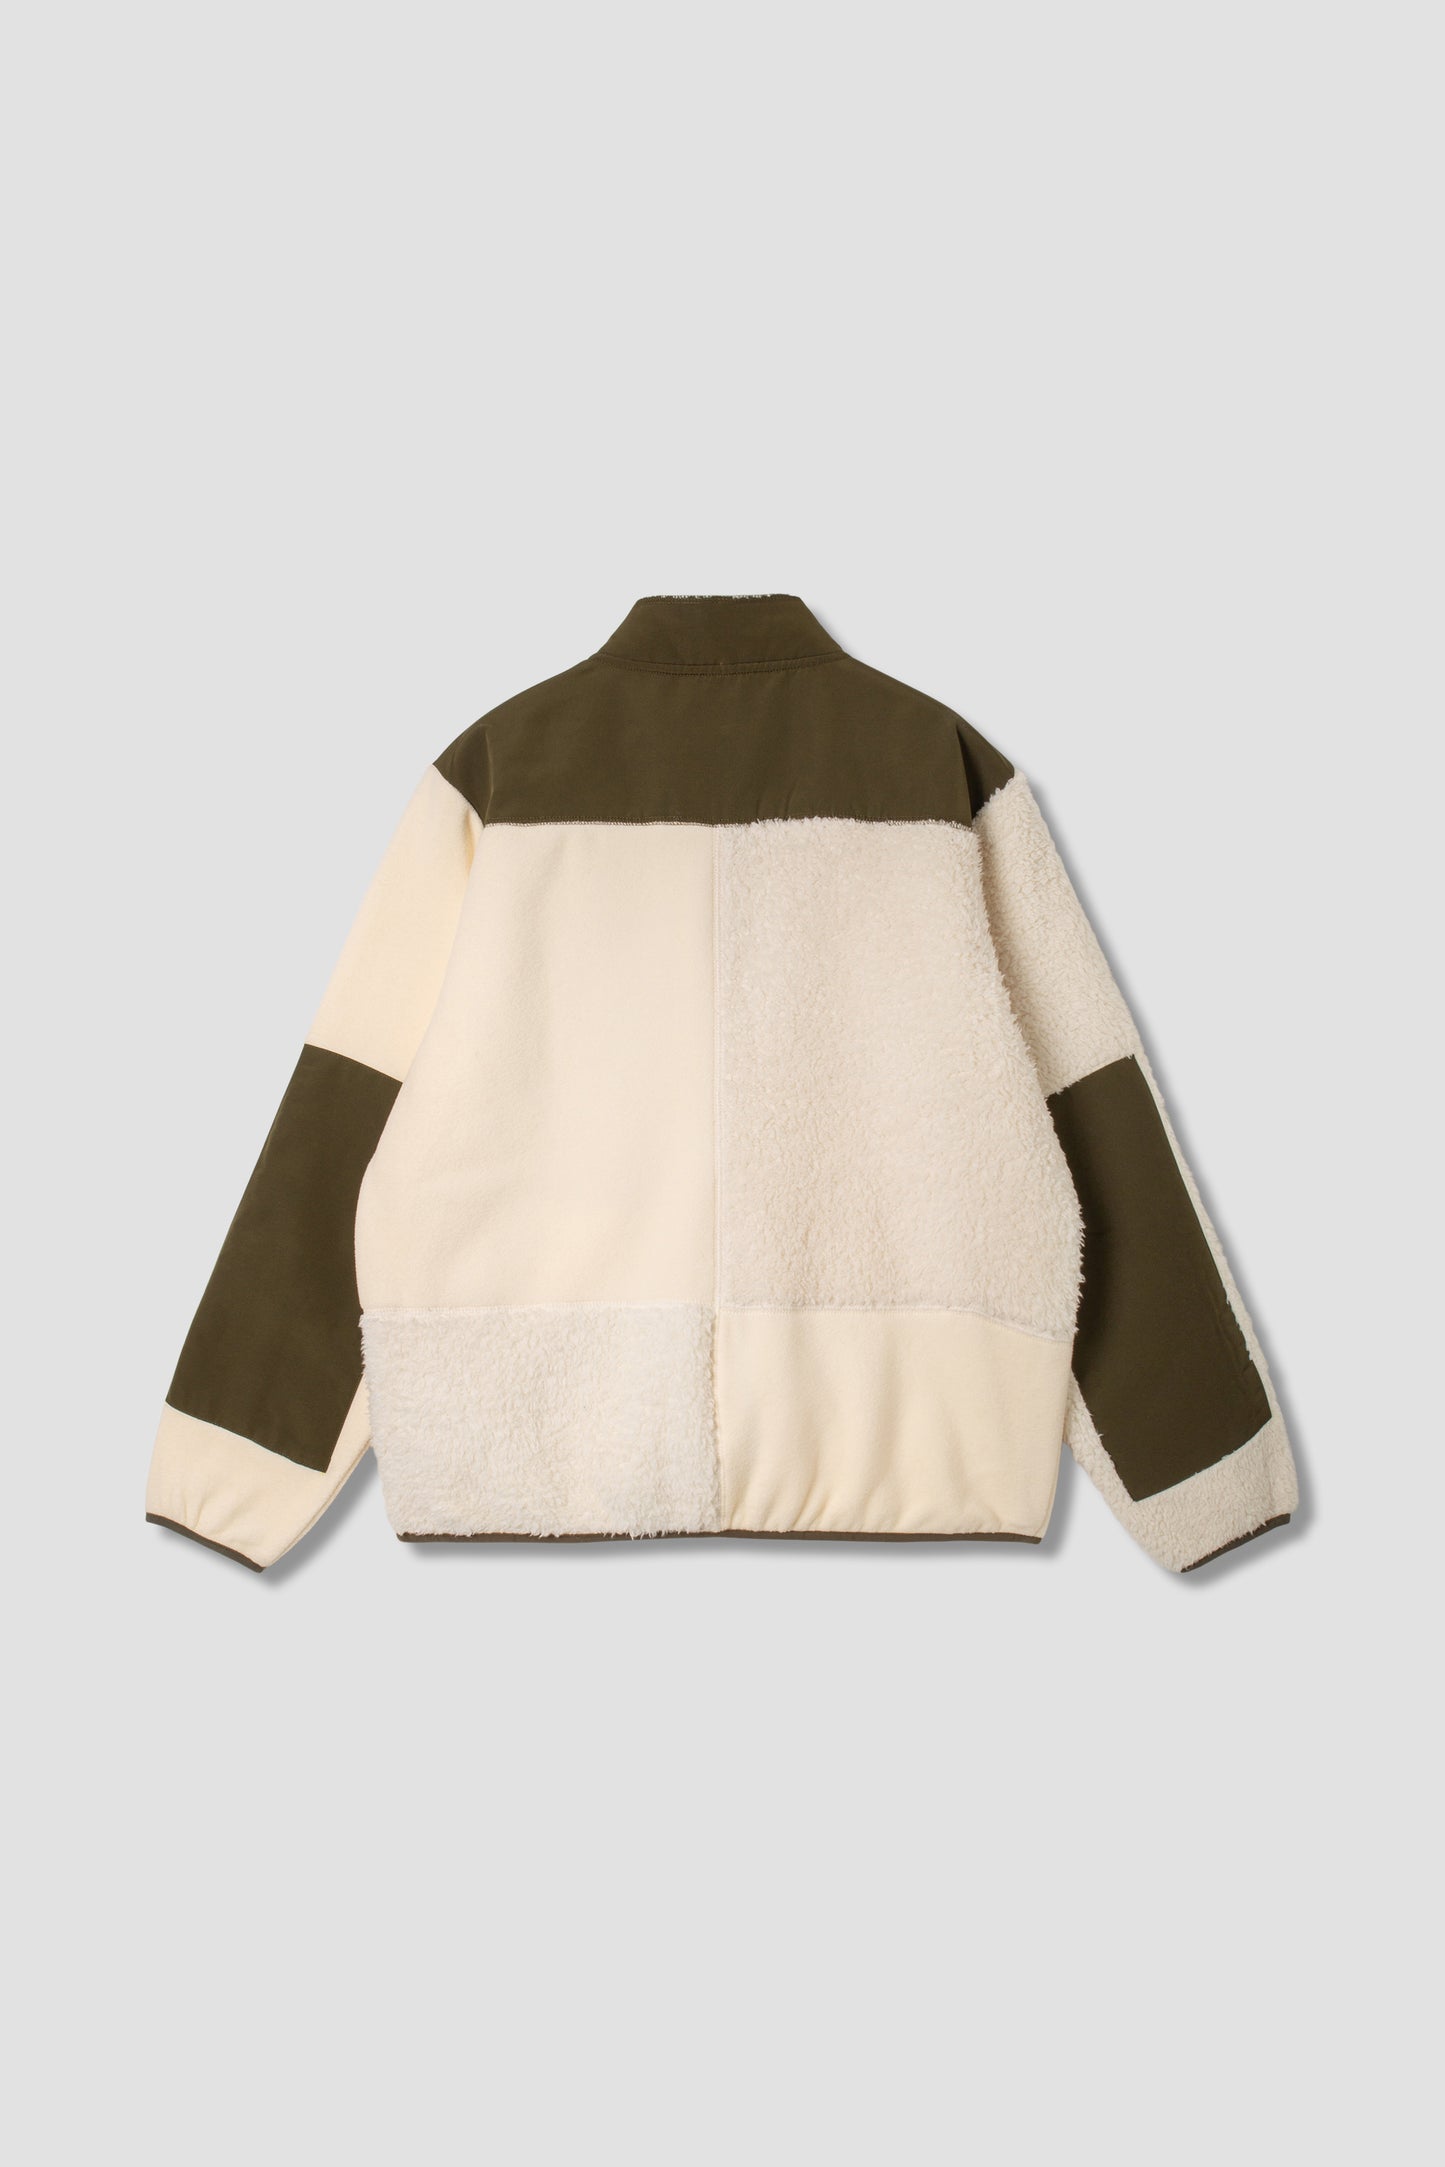 Patchwork Fleece Jacket (Natural / Olive)